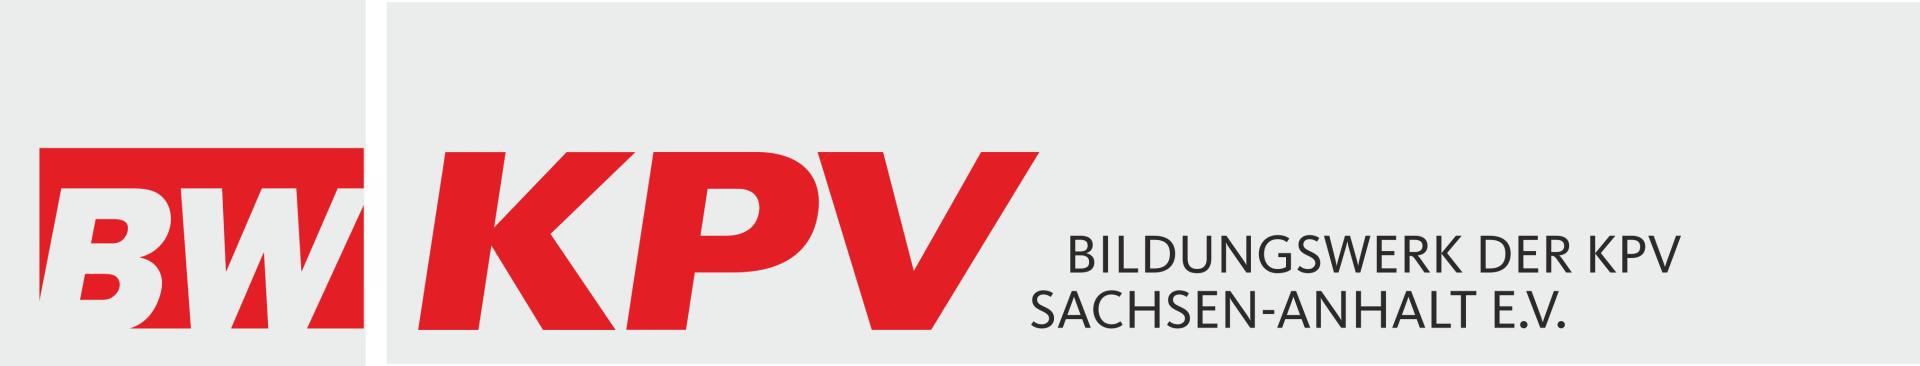 Bildungswerk der KPV Sachsen-Anhalt e.V